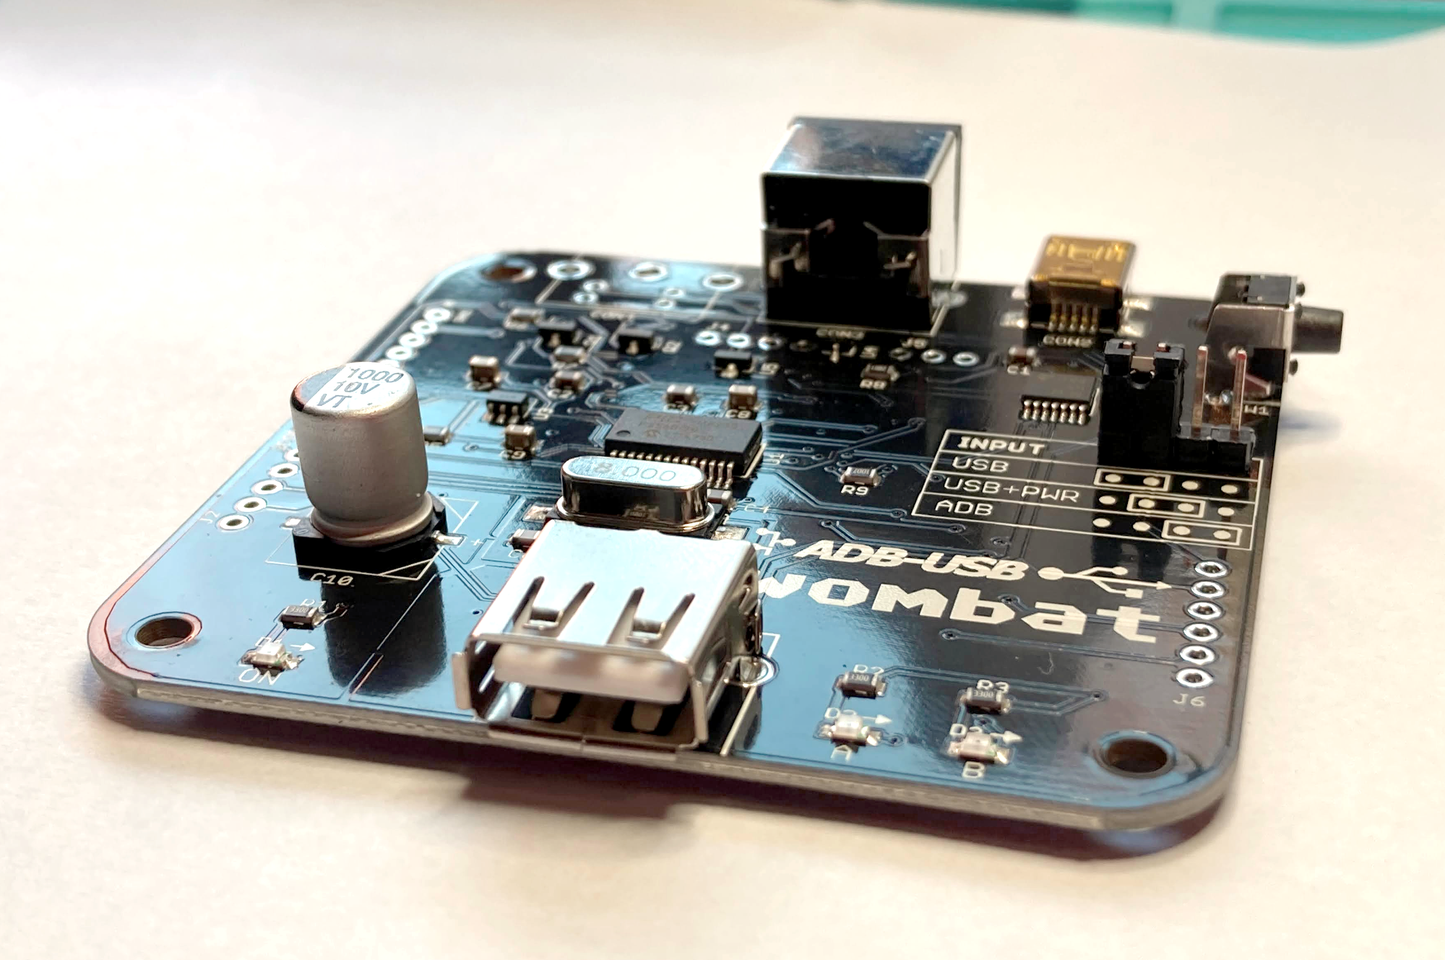 ADB-USB Wombat Input Converter